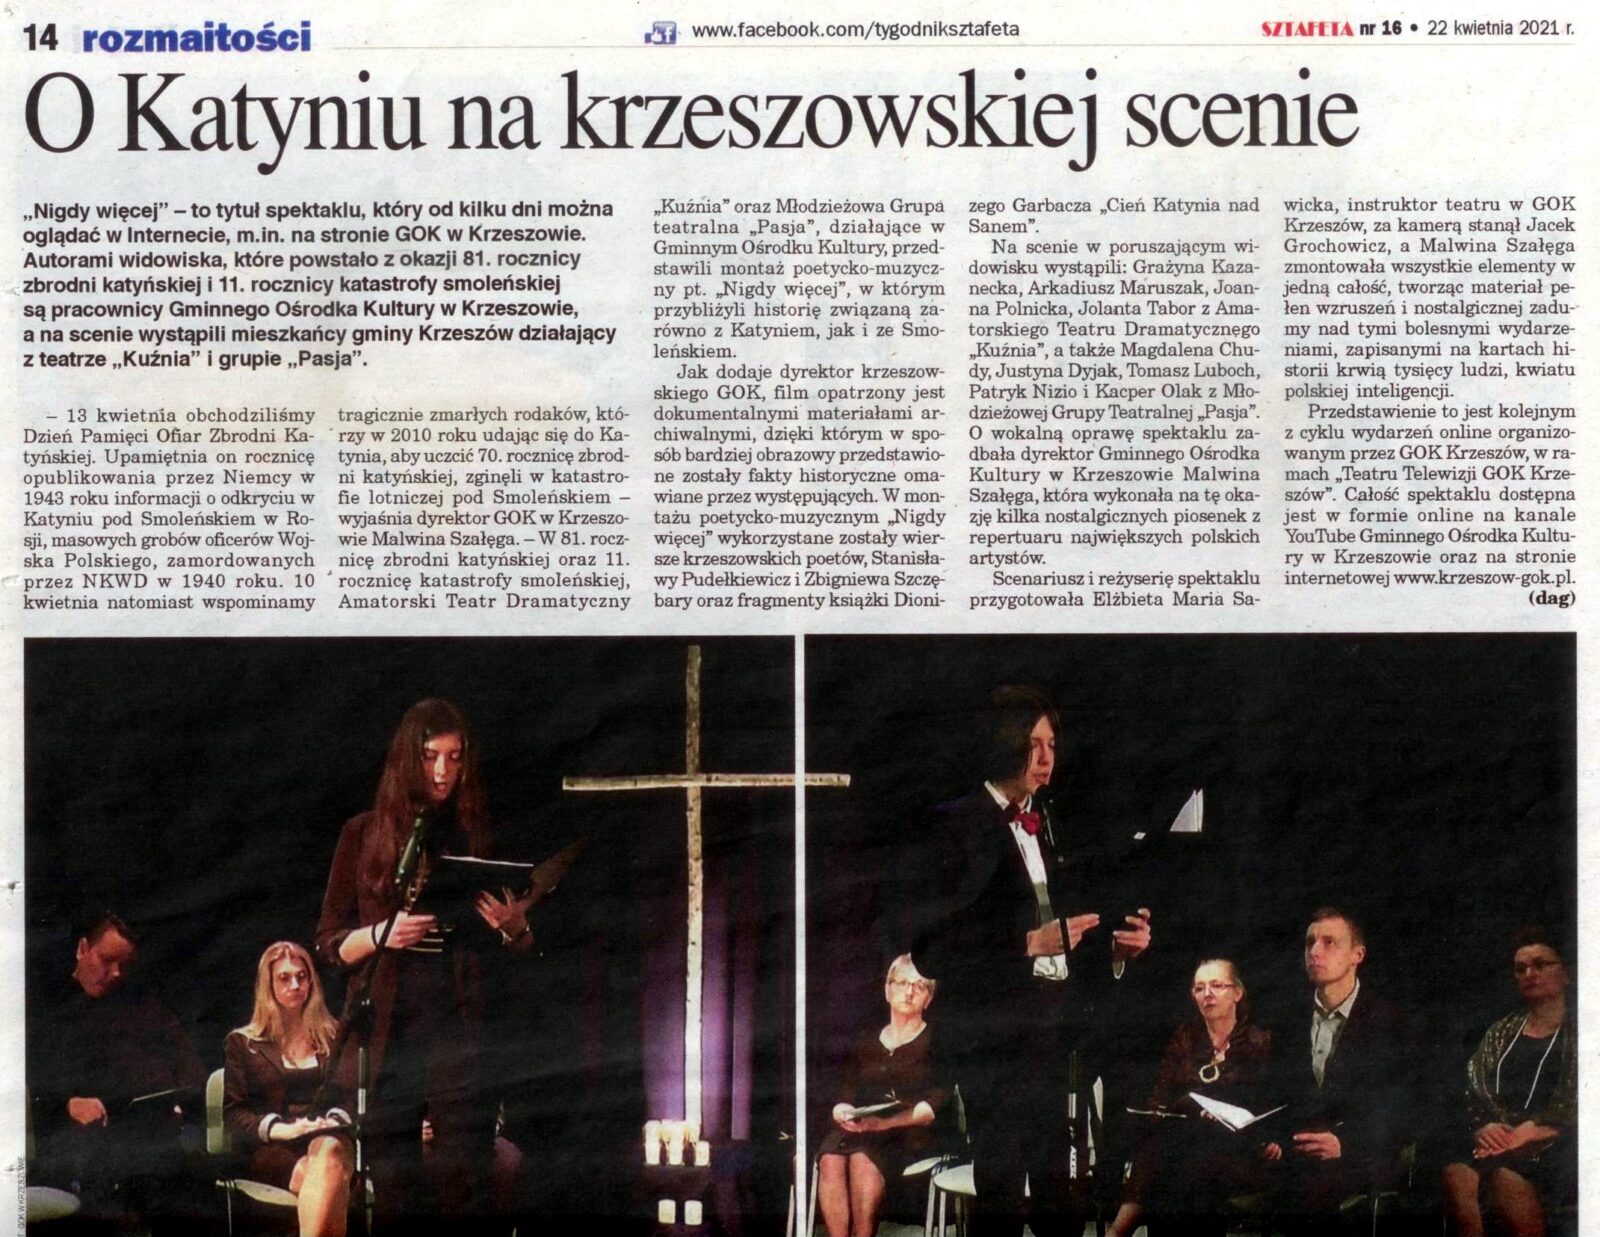 “Teatr Telewizji GOK Krzeszów” w lokalnej prasie